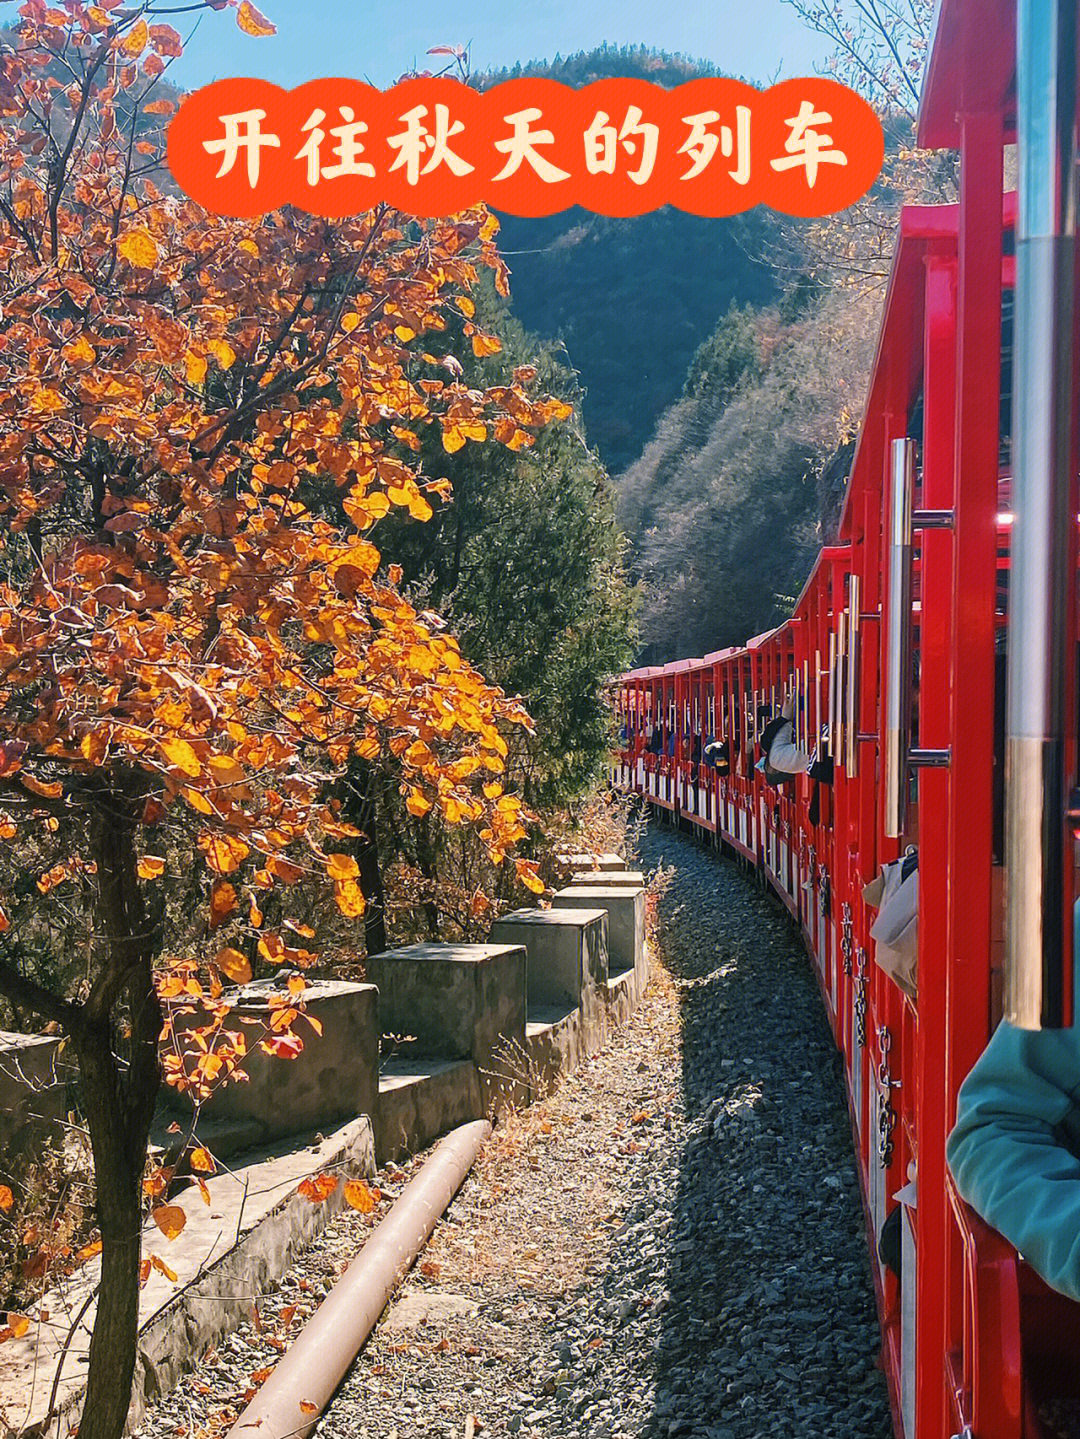 来双龙峡坐一趟开往秋天的列车吧